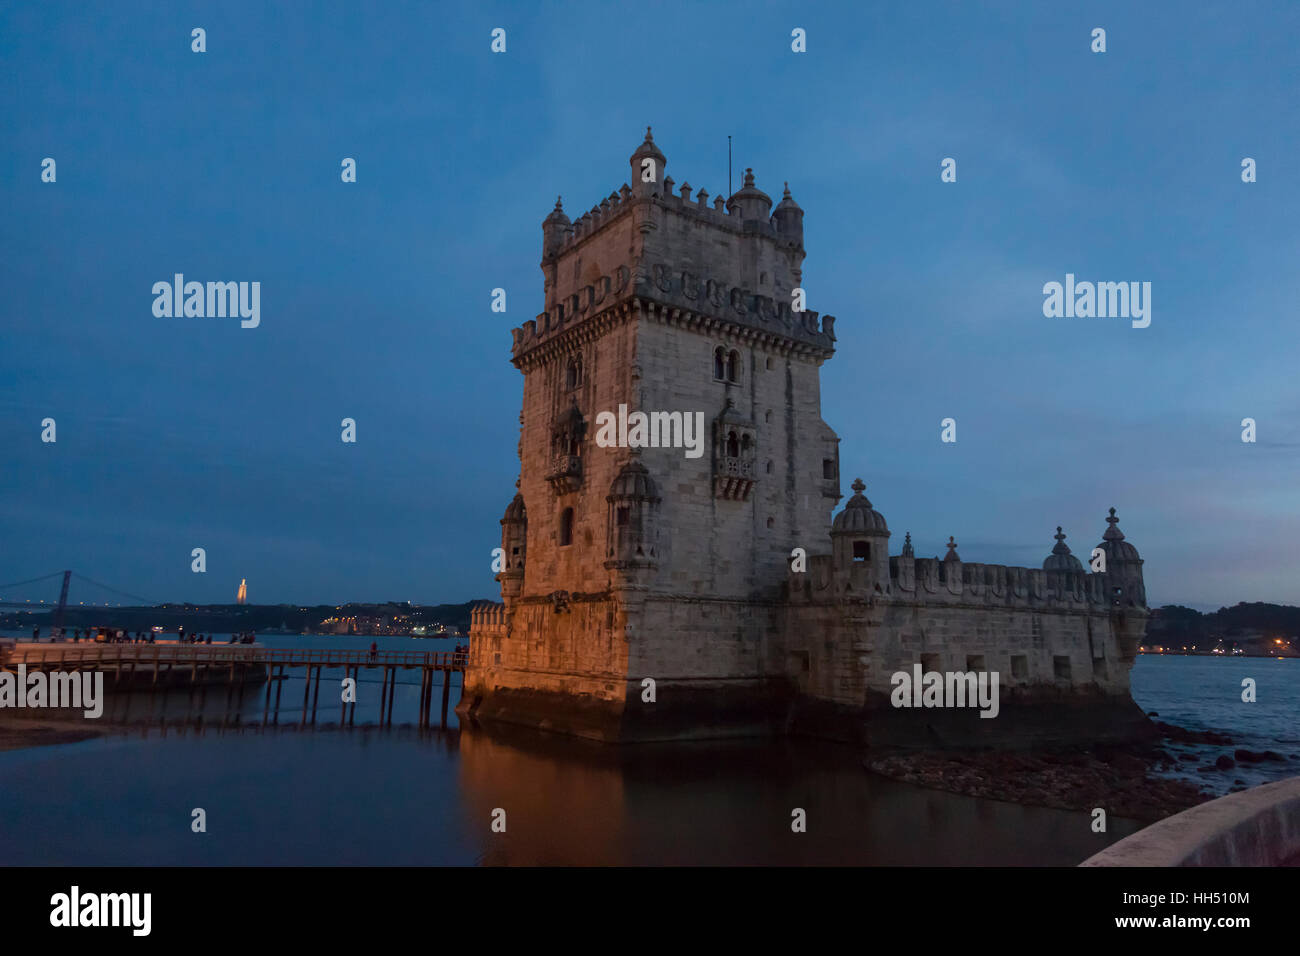 Lisboa, Portugal: la Torre de Belém en la ribera del río Tajo. La fortificación del siglo XVI es un destacado ejemplo del estilo manuelino portugués. Foto de stock